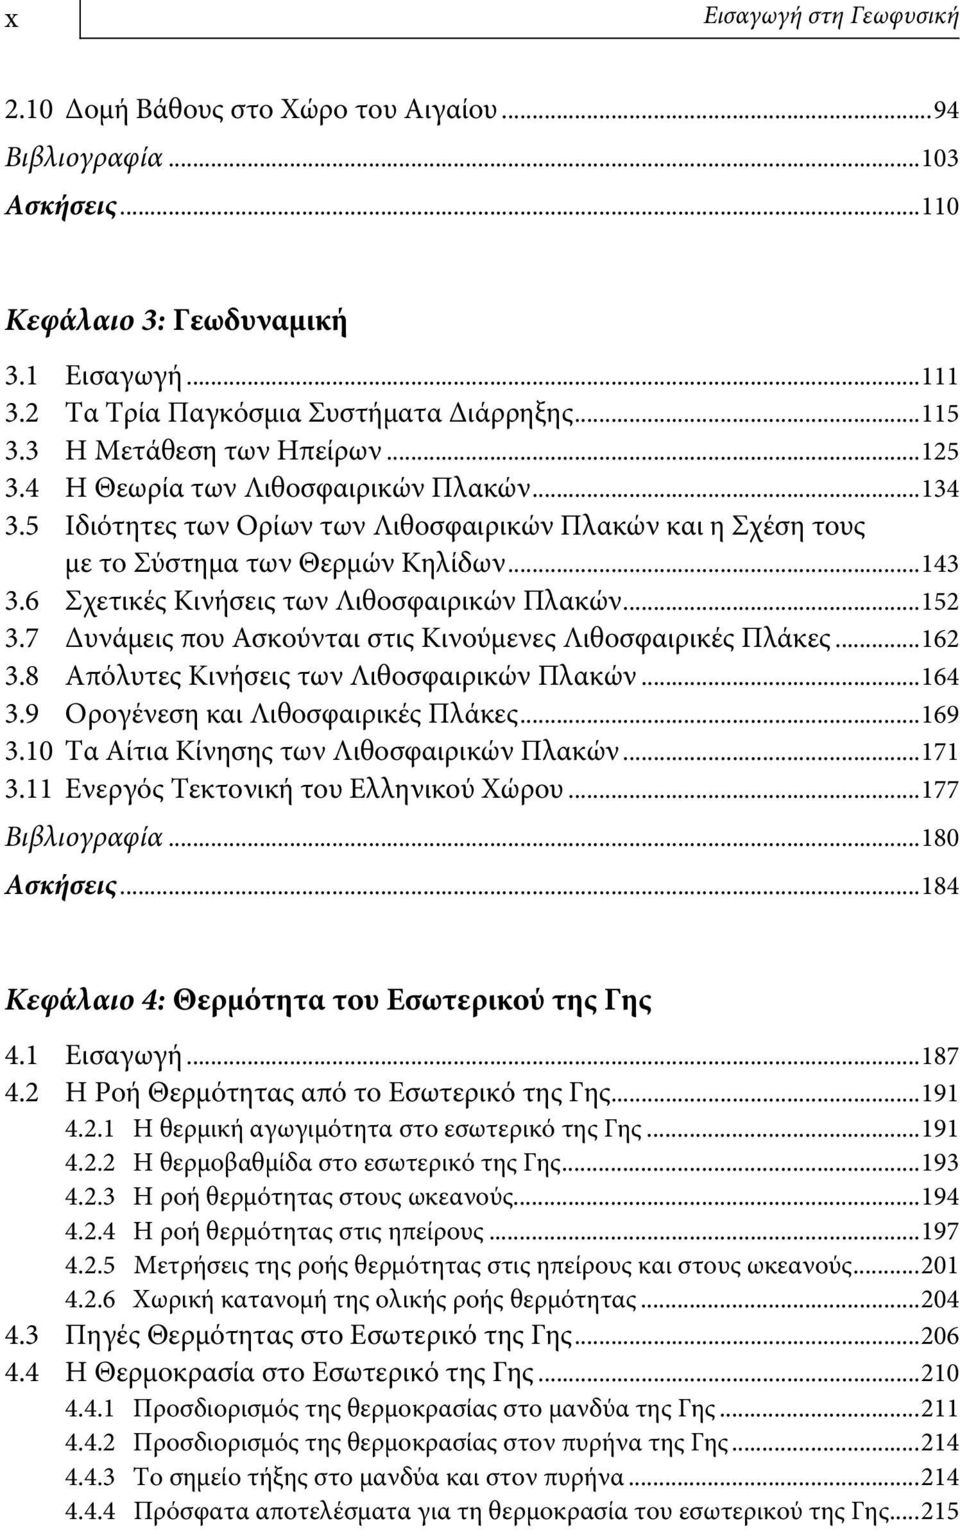 6 Σχετικές Κινήσεις των Λιθοσφαιρικών Πλακών...152 3.7 Δυνάμεις που Ασκούνται στις Κινούμενες Λιθοσφαιρικές Πλάκες...162 3.8 Απόλυτες Κινήσεις των Λιθοσφαιρικών Πλακών...164 3.